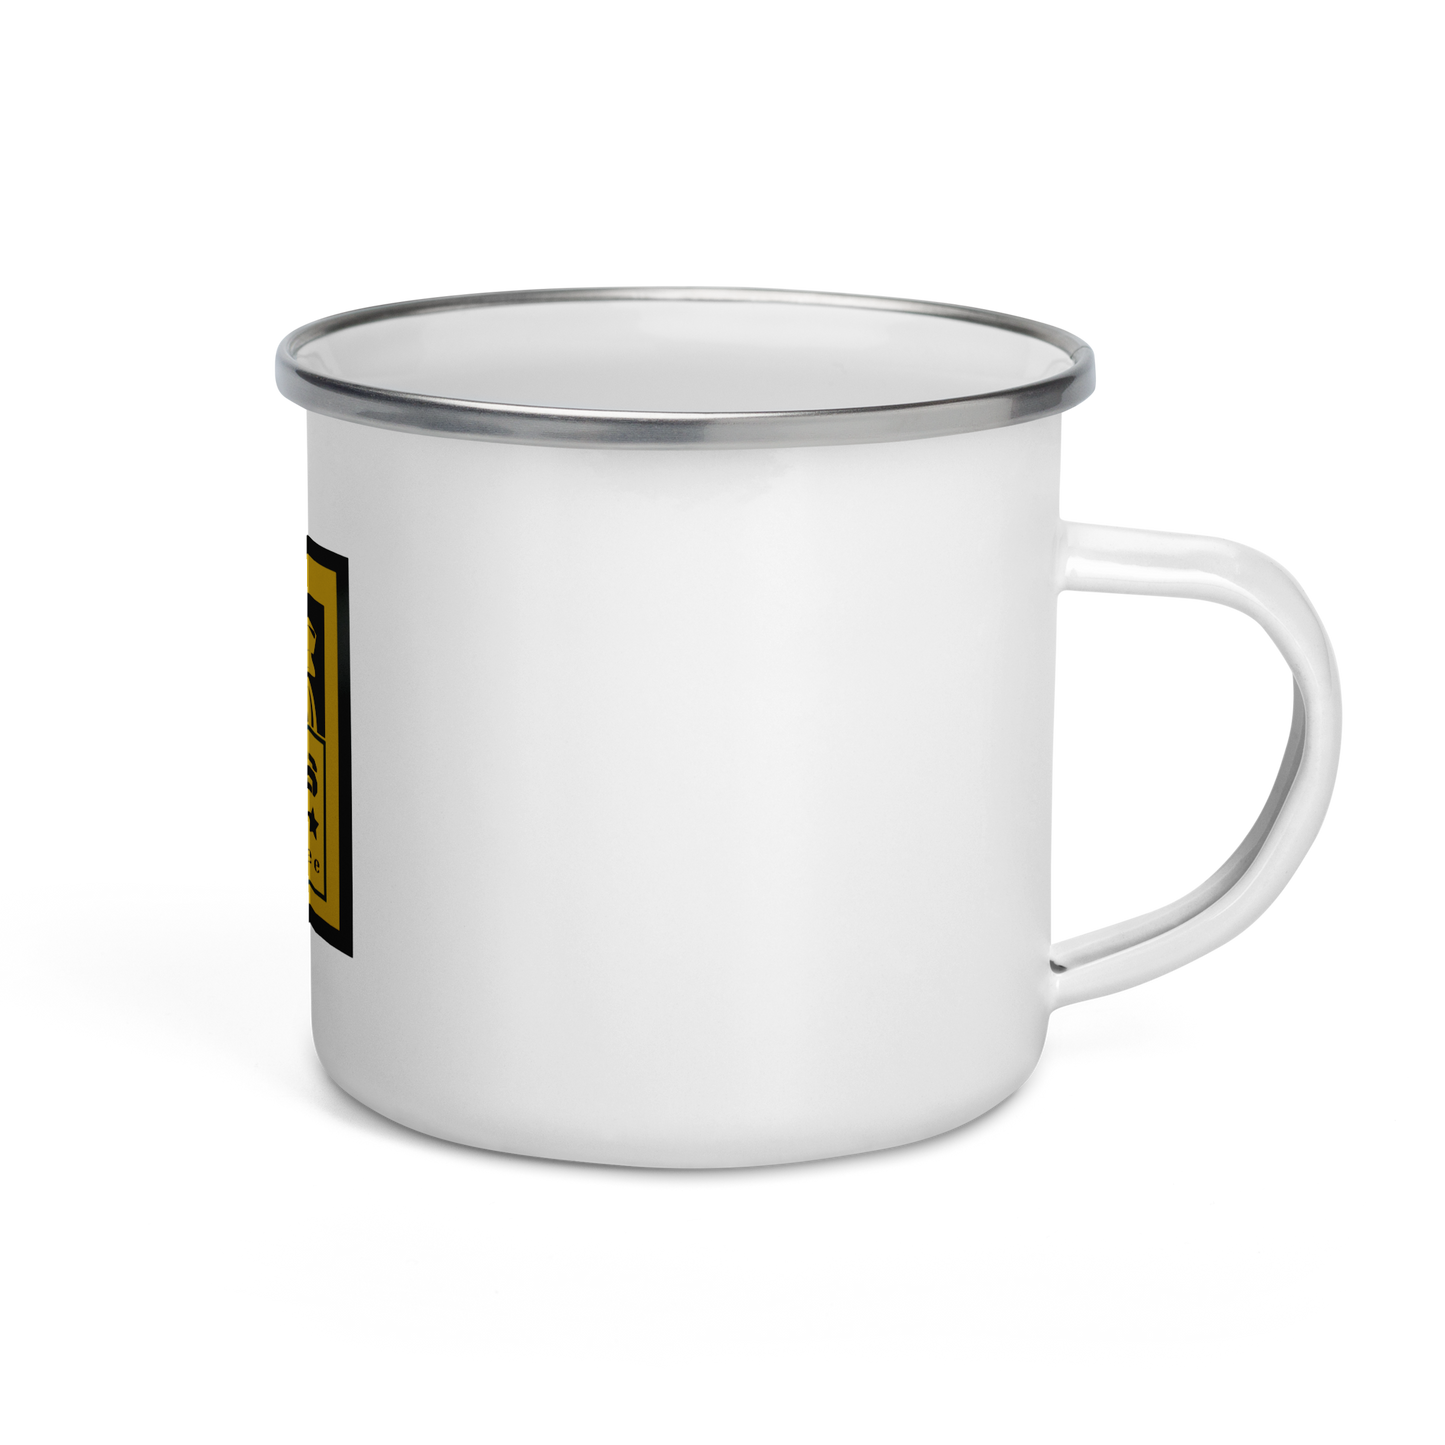 2 Kings Coffee - Enamel Branded Mug